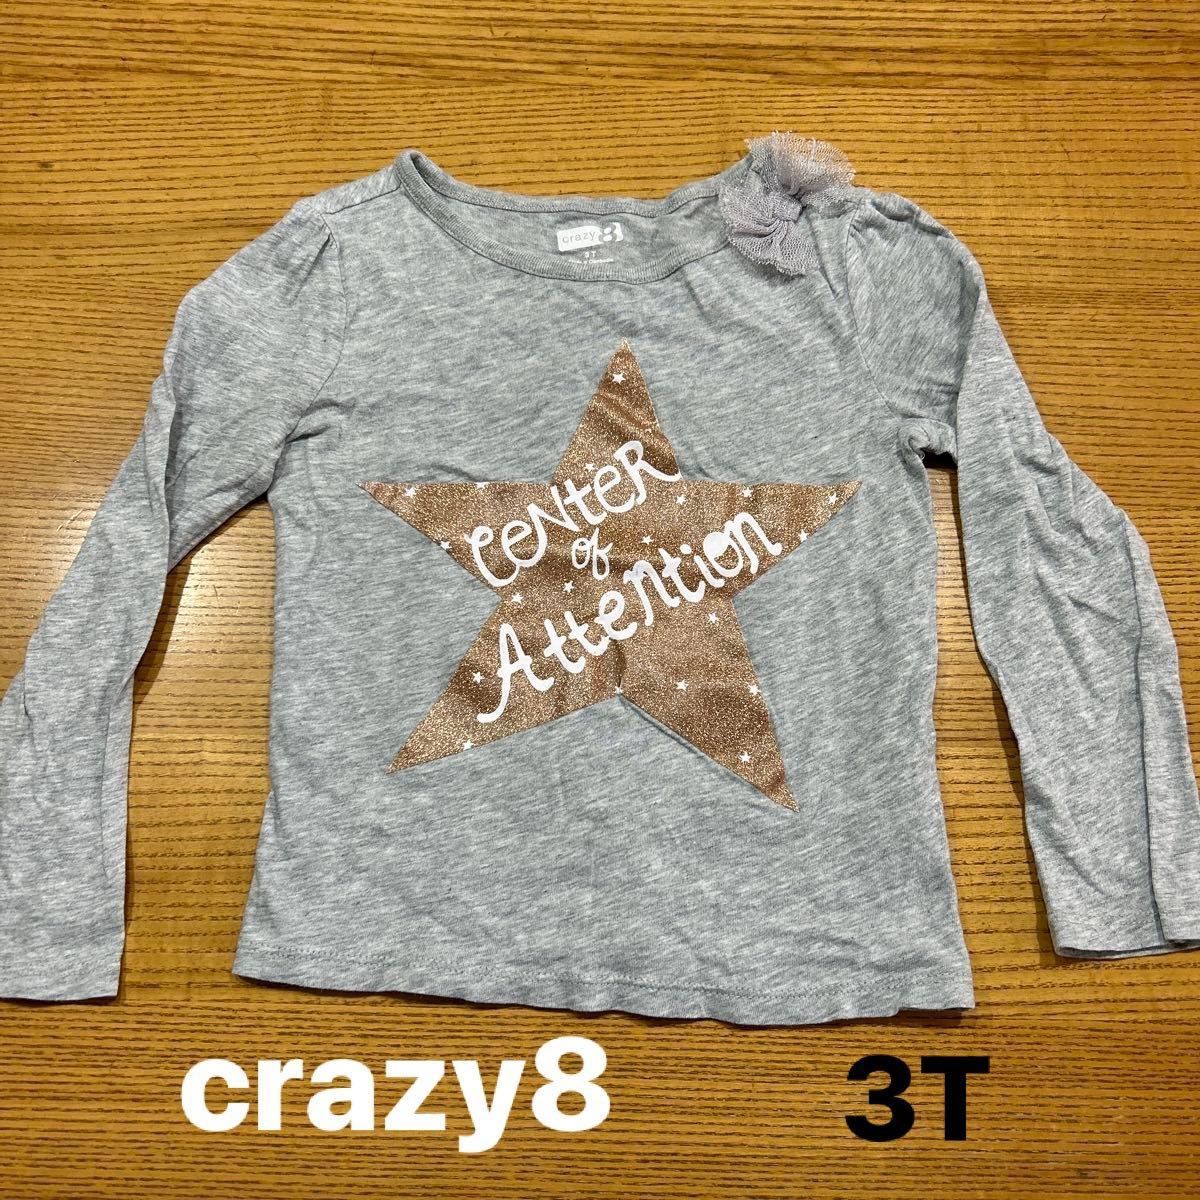 【crazy8】(USED)クレイジー8  グレー 肩リボン付き キラキラスター 長袖Tシャツ 3T(100cm)